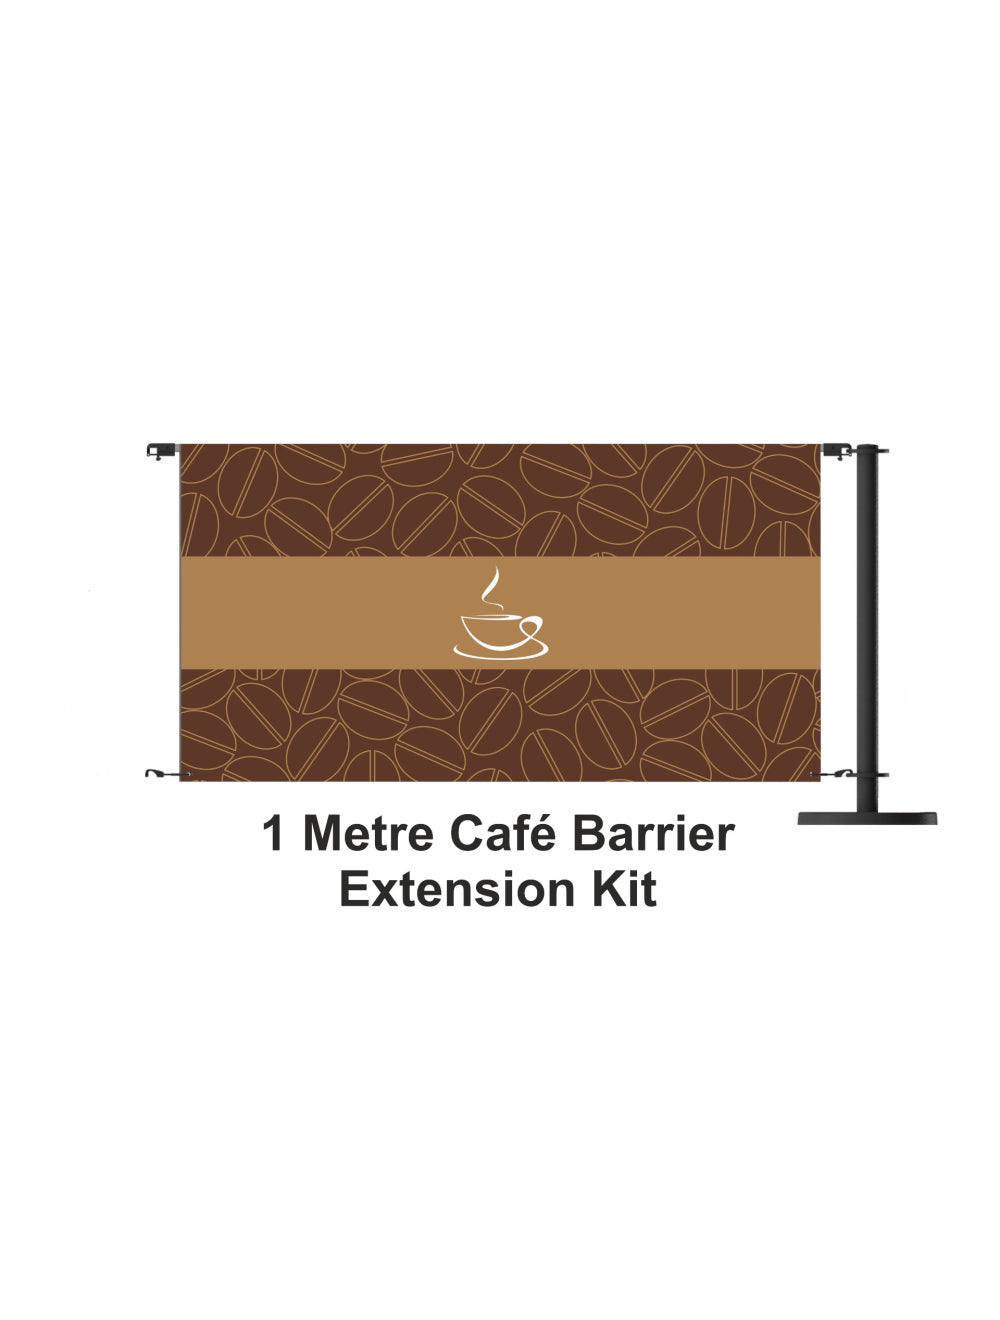 Komplet za proširenje barijera za kafiće od 1 metra